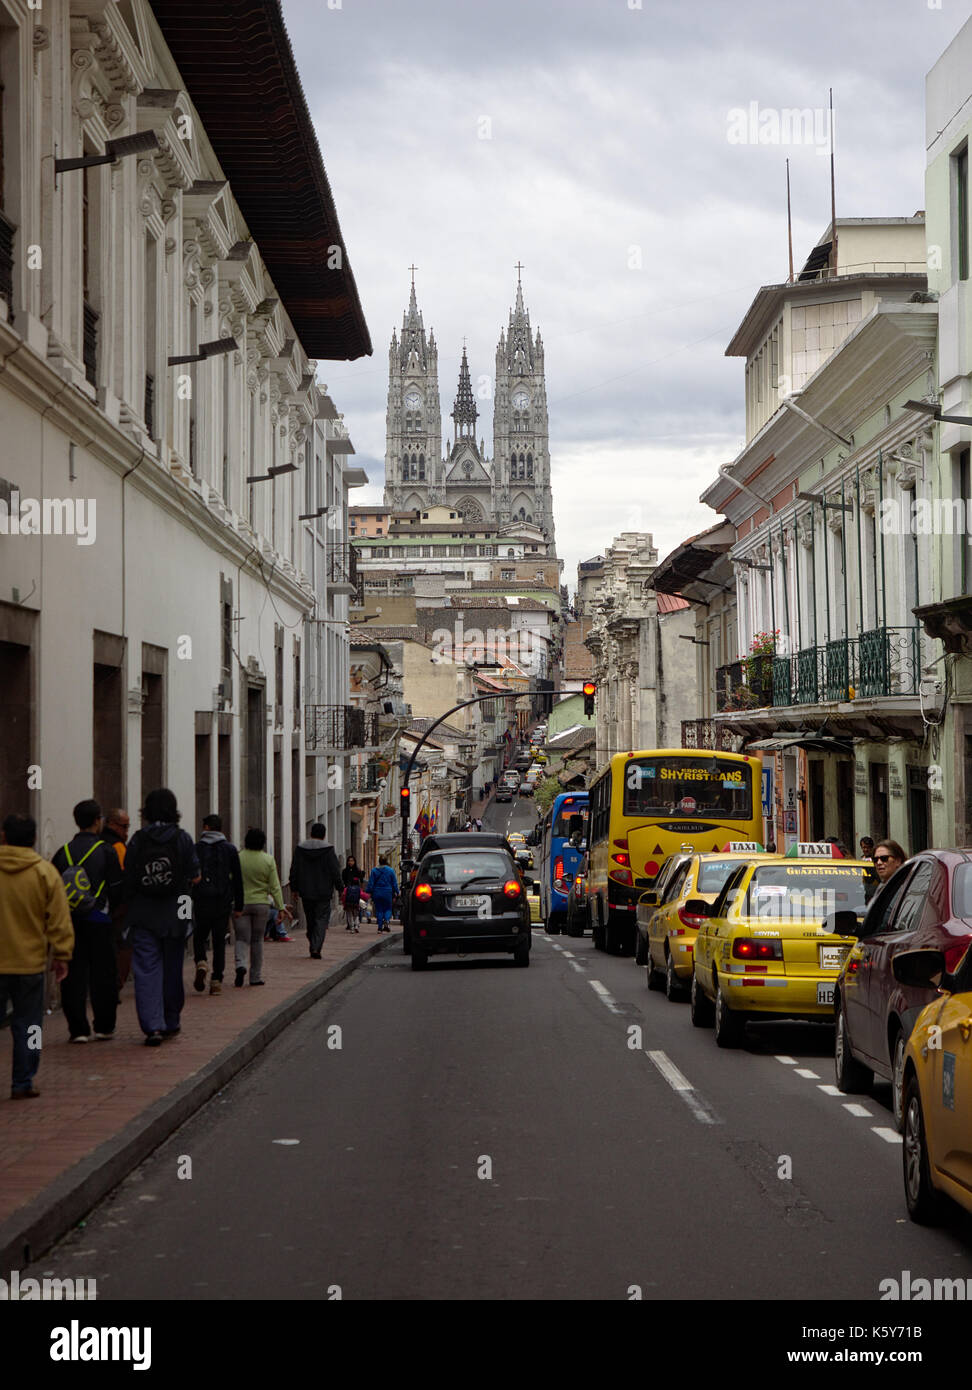 Quito, Ecuador - 2017: Eine Straße im historischen Zentrum, mit der Basilika des Nationalen Gelübdes (Basílica del Voto Nacional) im Hintergrund. Stockfoto